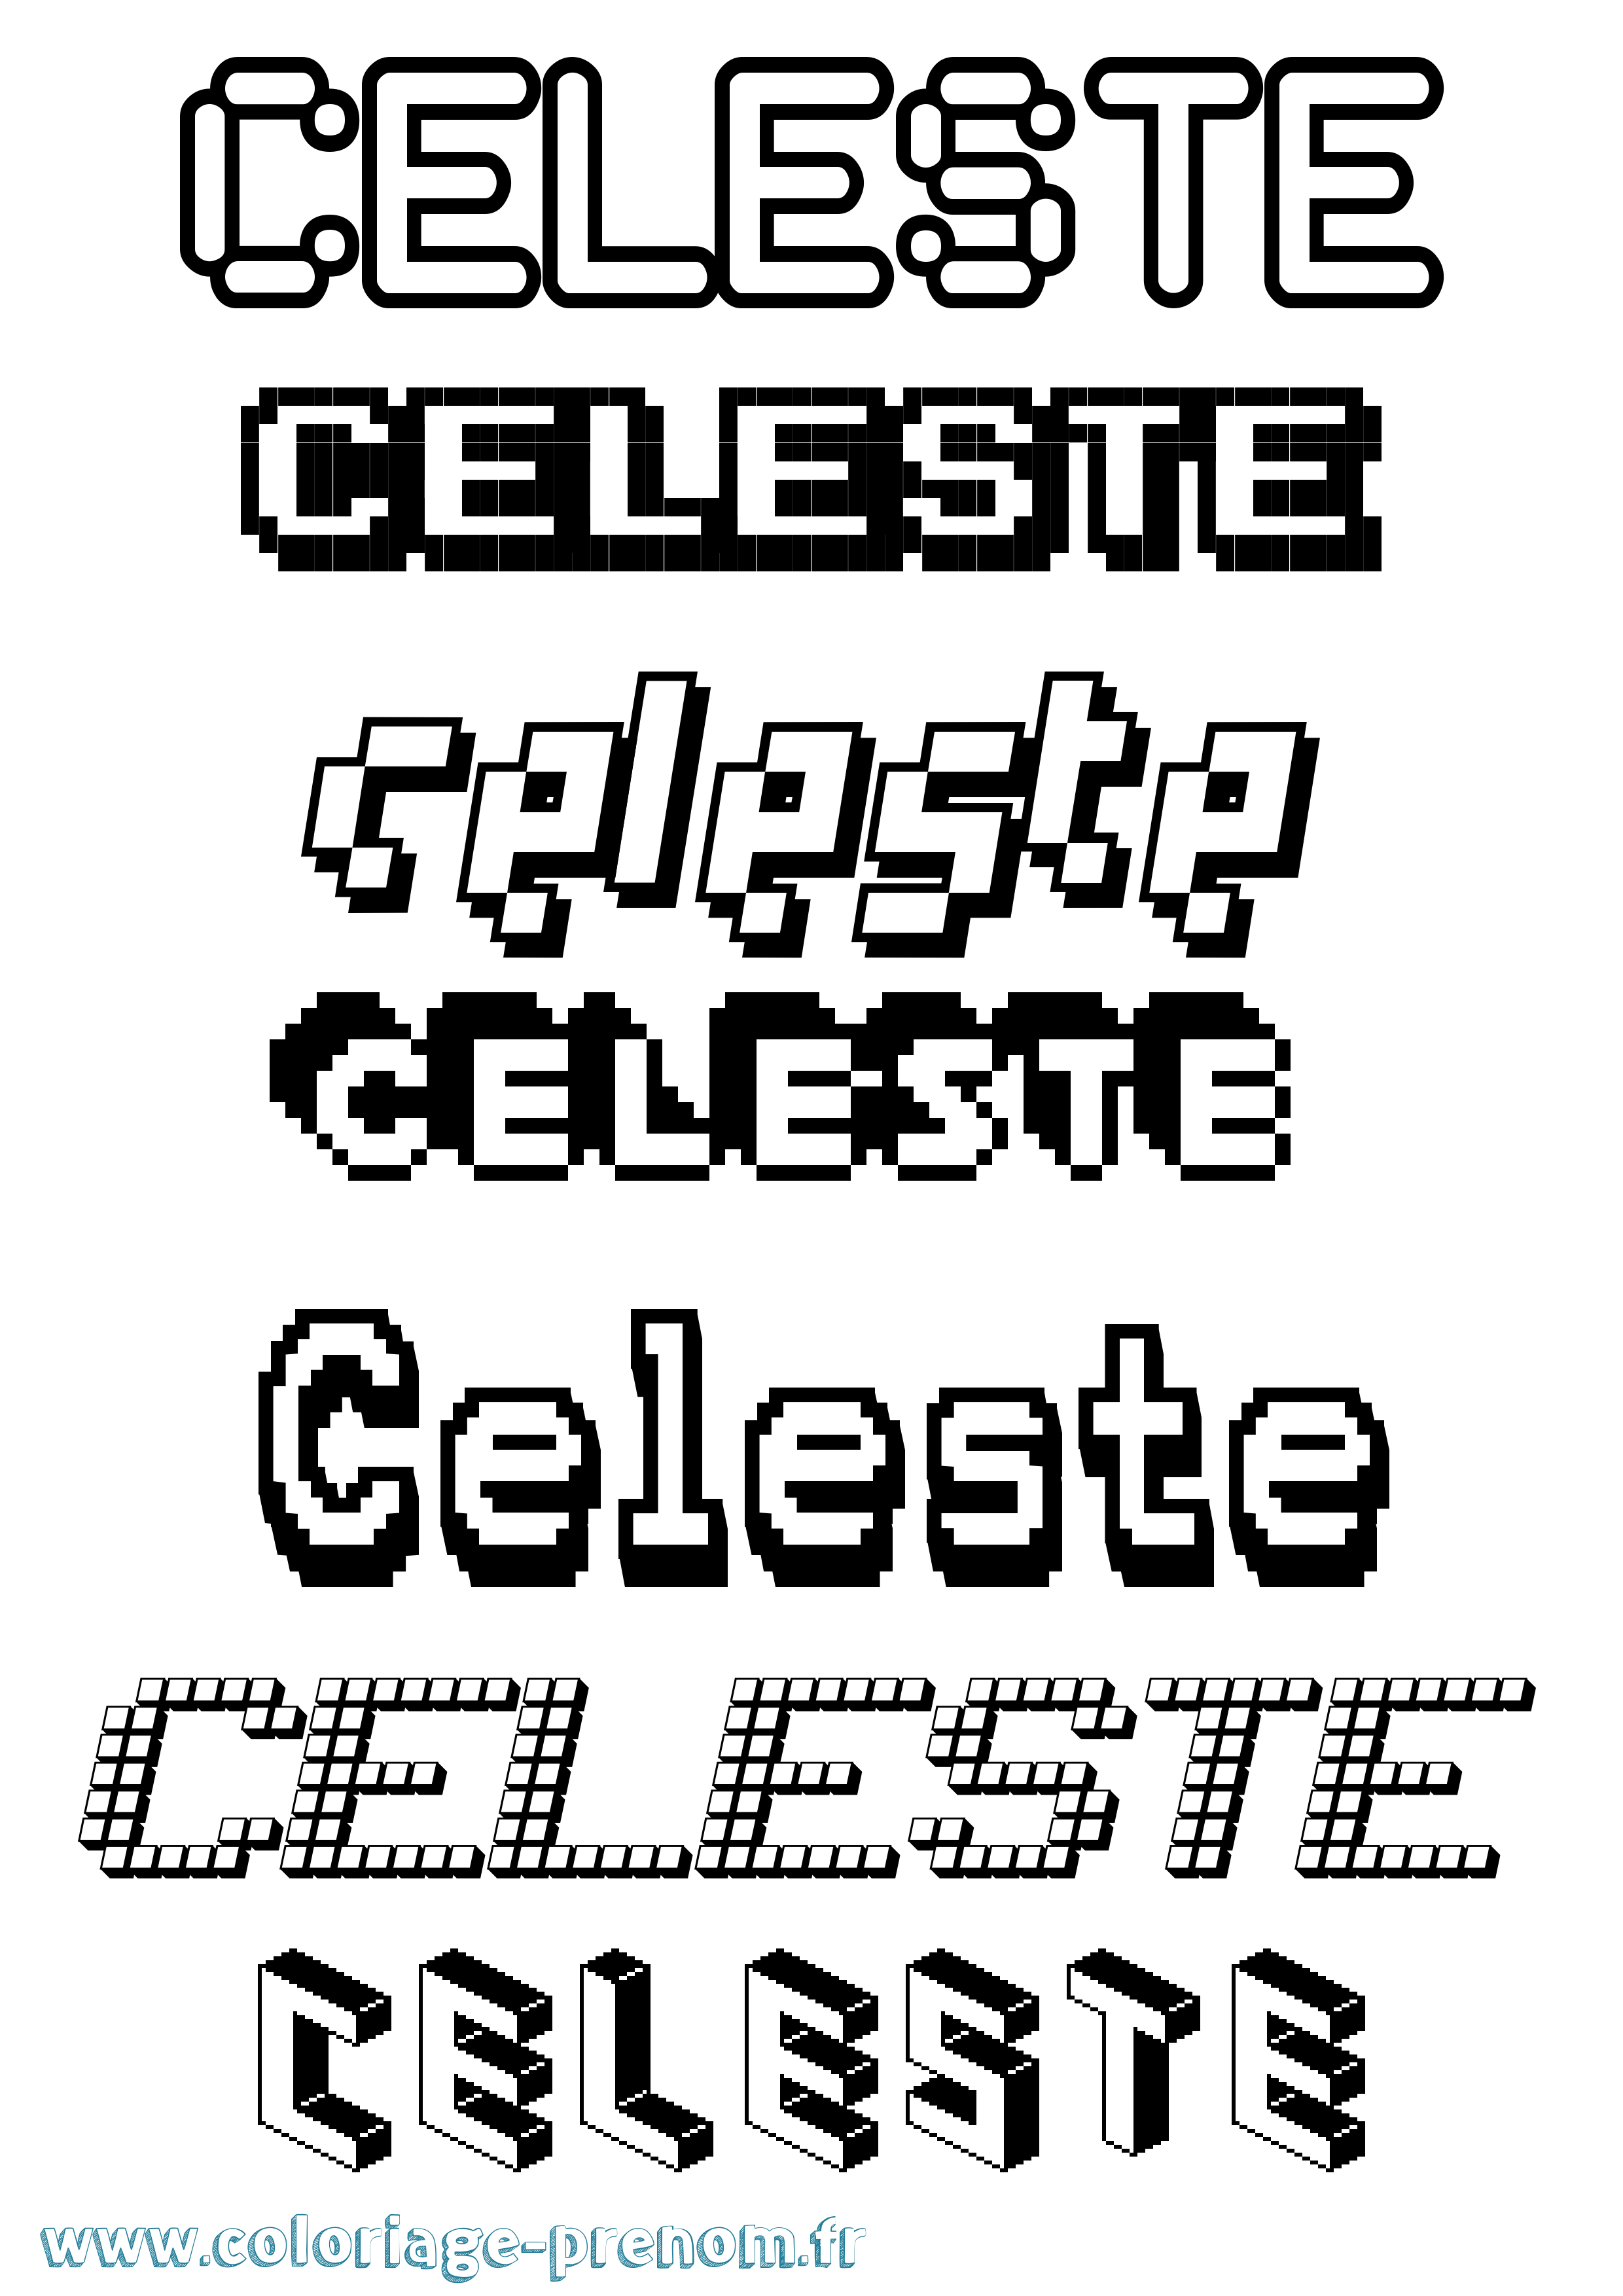 Coloriage prénom Celeste Pixel